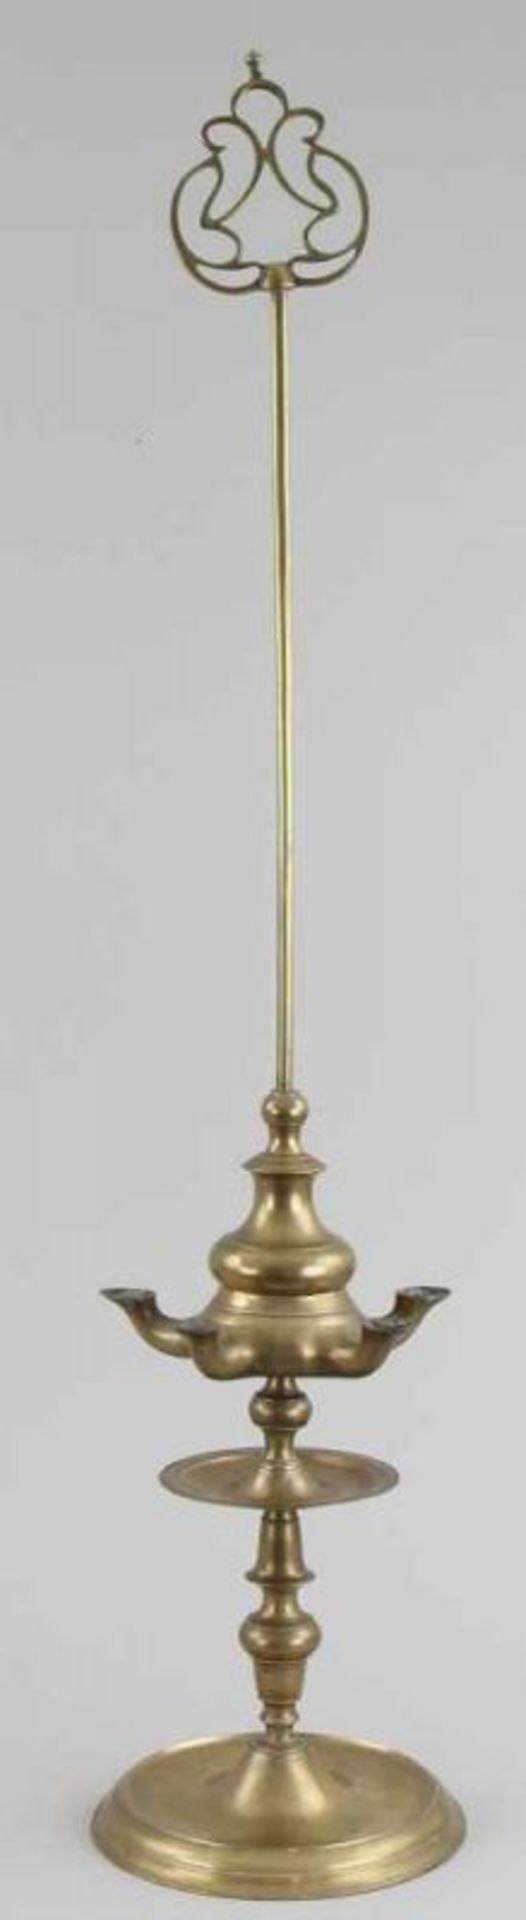 Seltene Öllampe, sog. "Florentiner Lampe" Messing gegossen und gedreht, Balusterschaft mit breitem